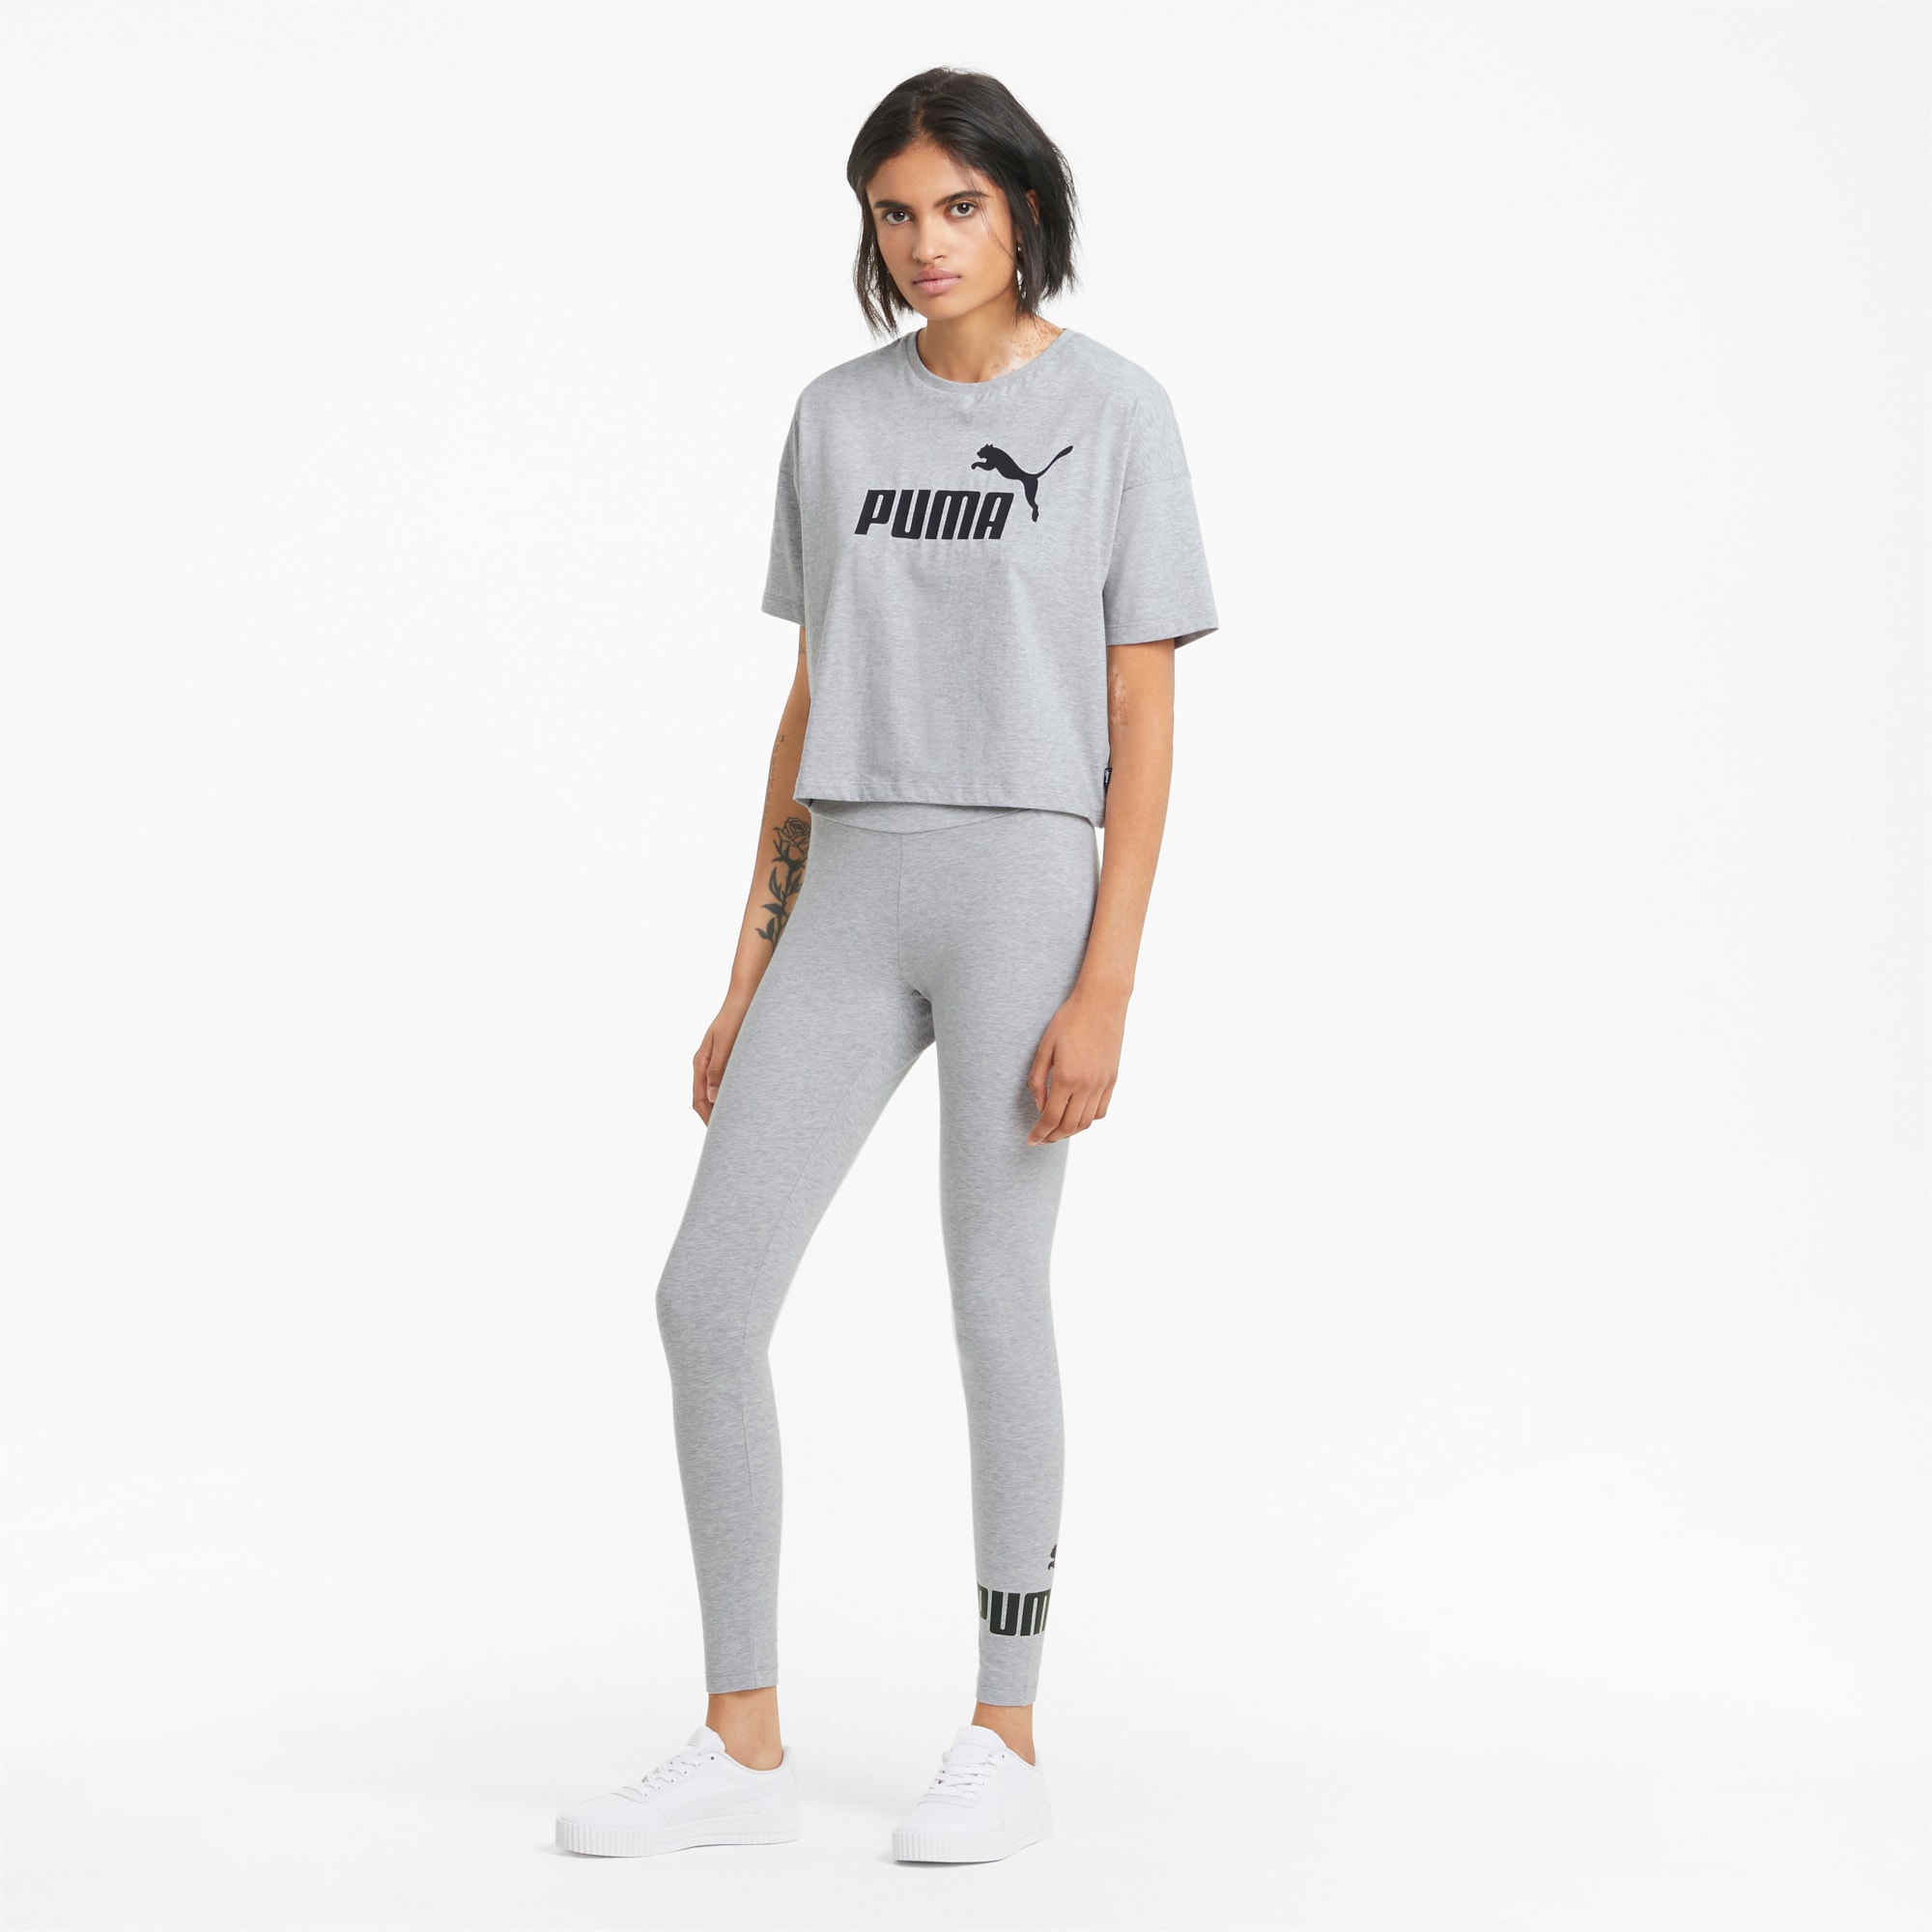 900+ News ideas  women's leggings, leggings, leggings price